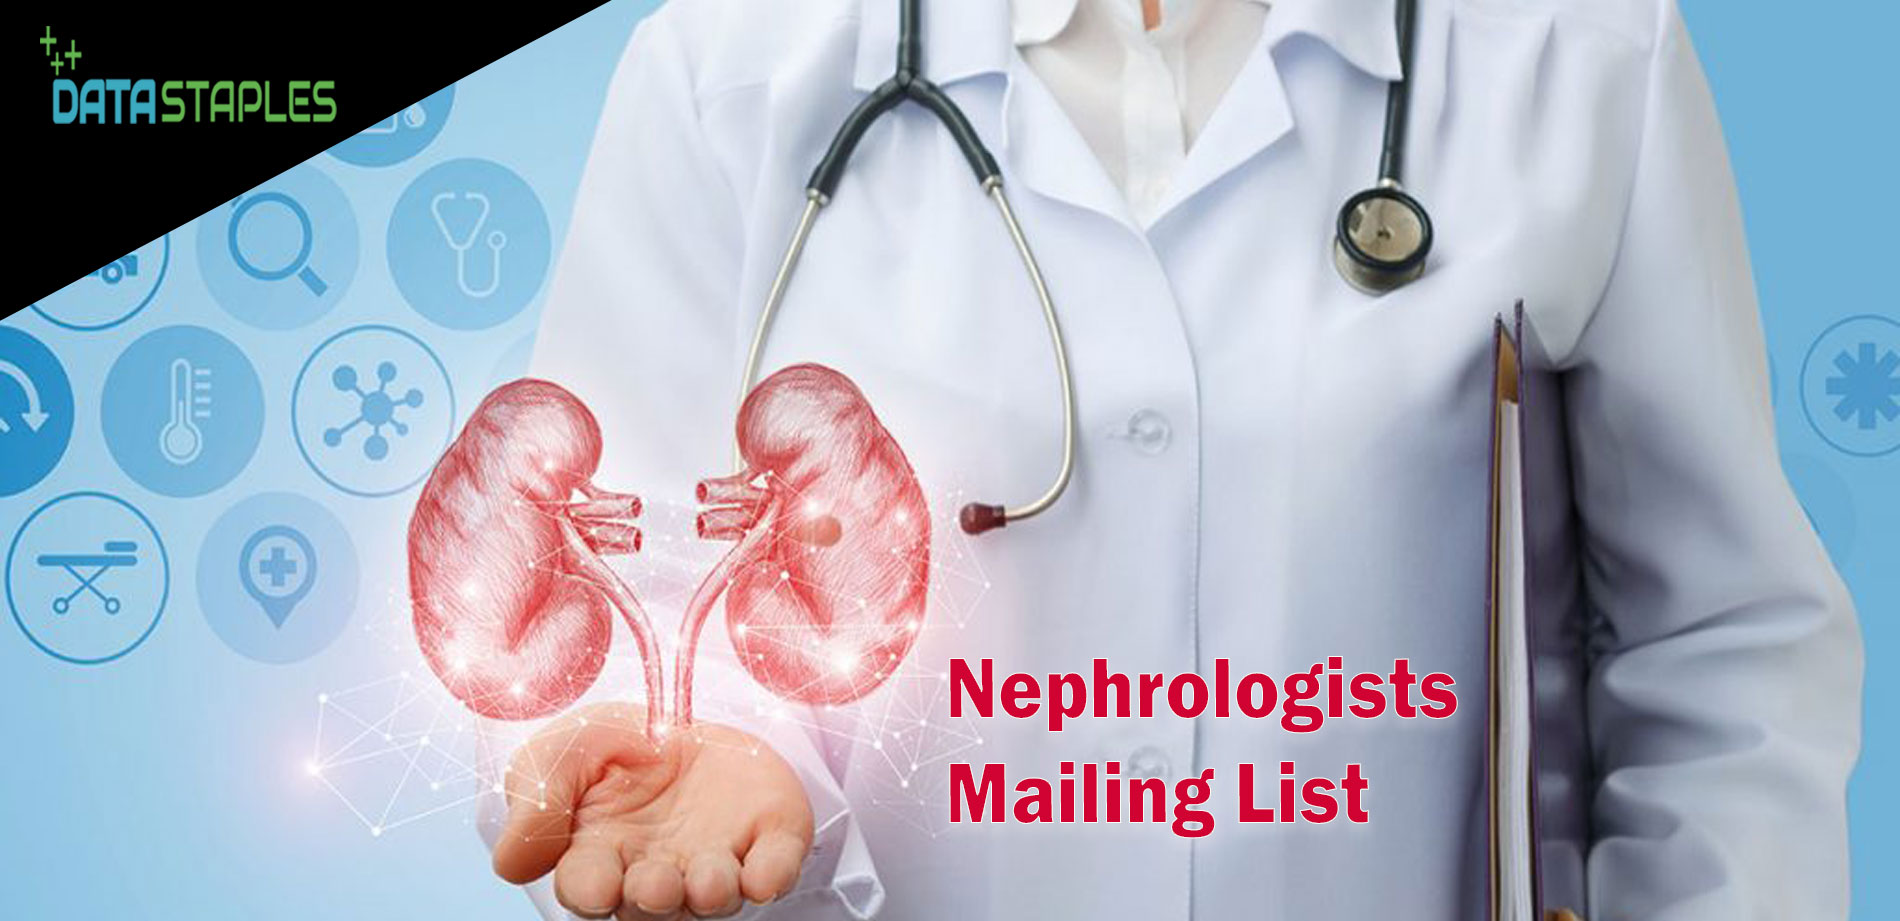 Nephrologists Mailing List | DataStaples